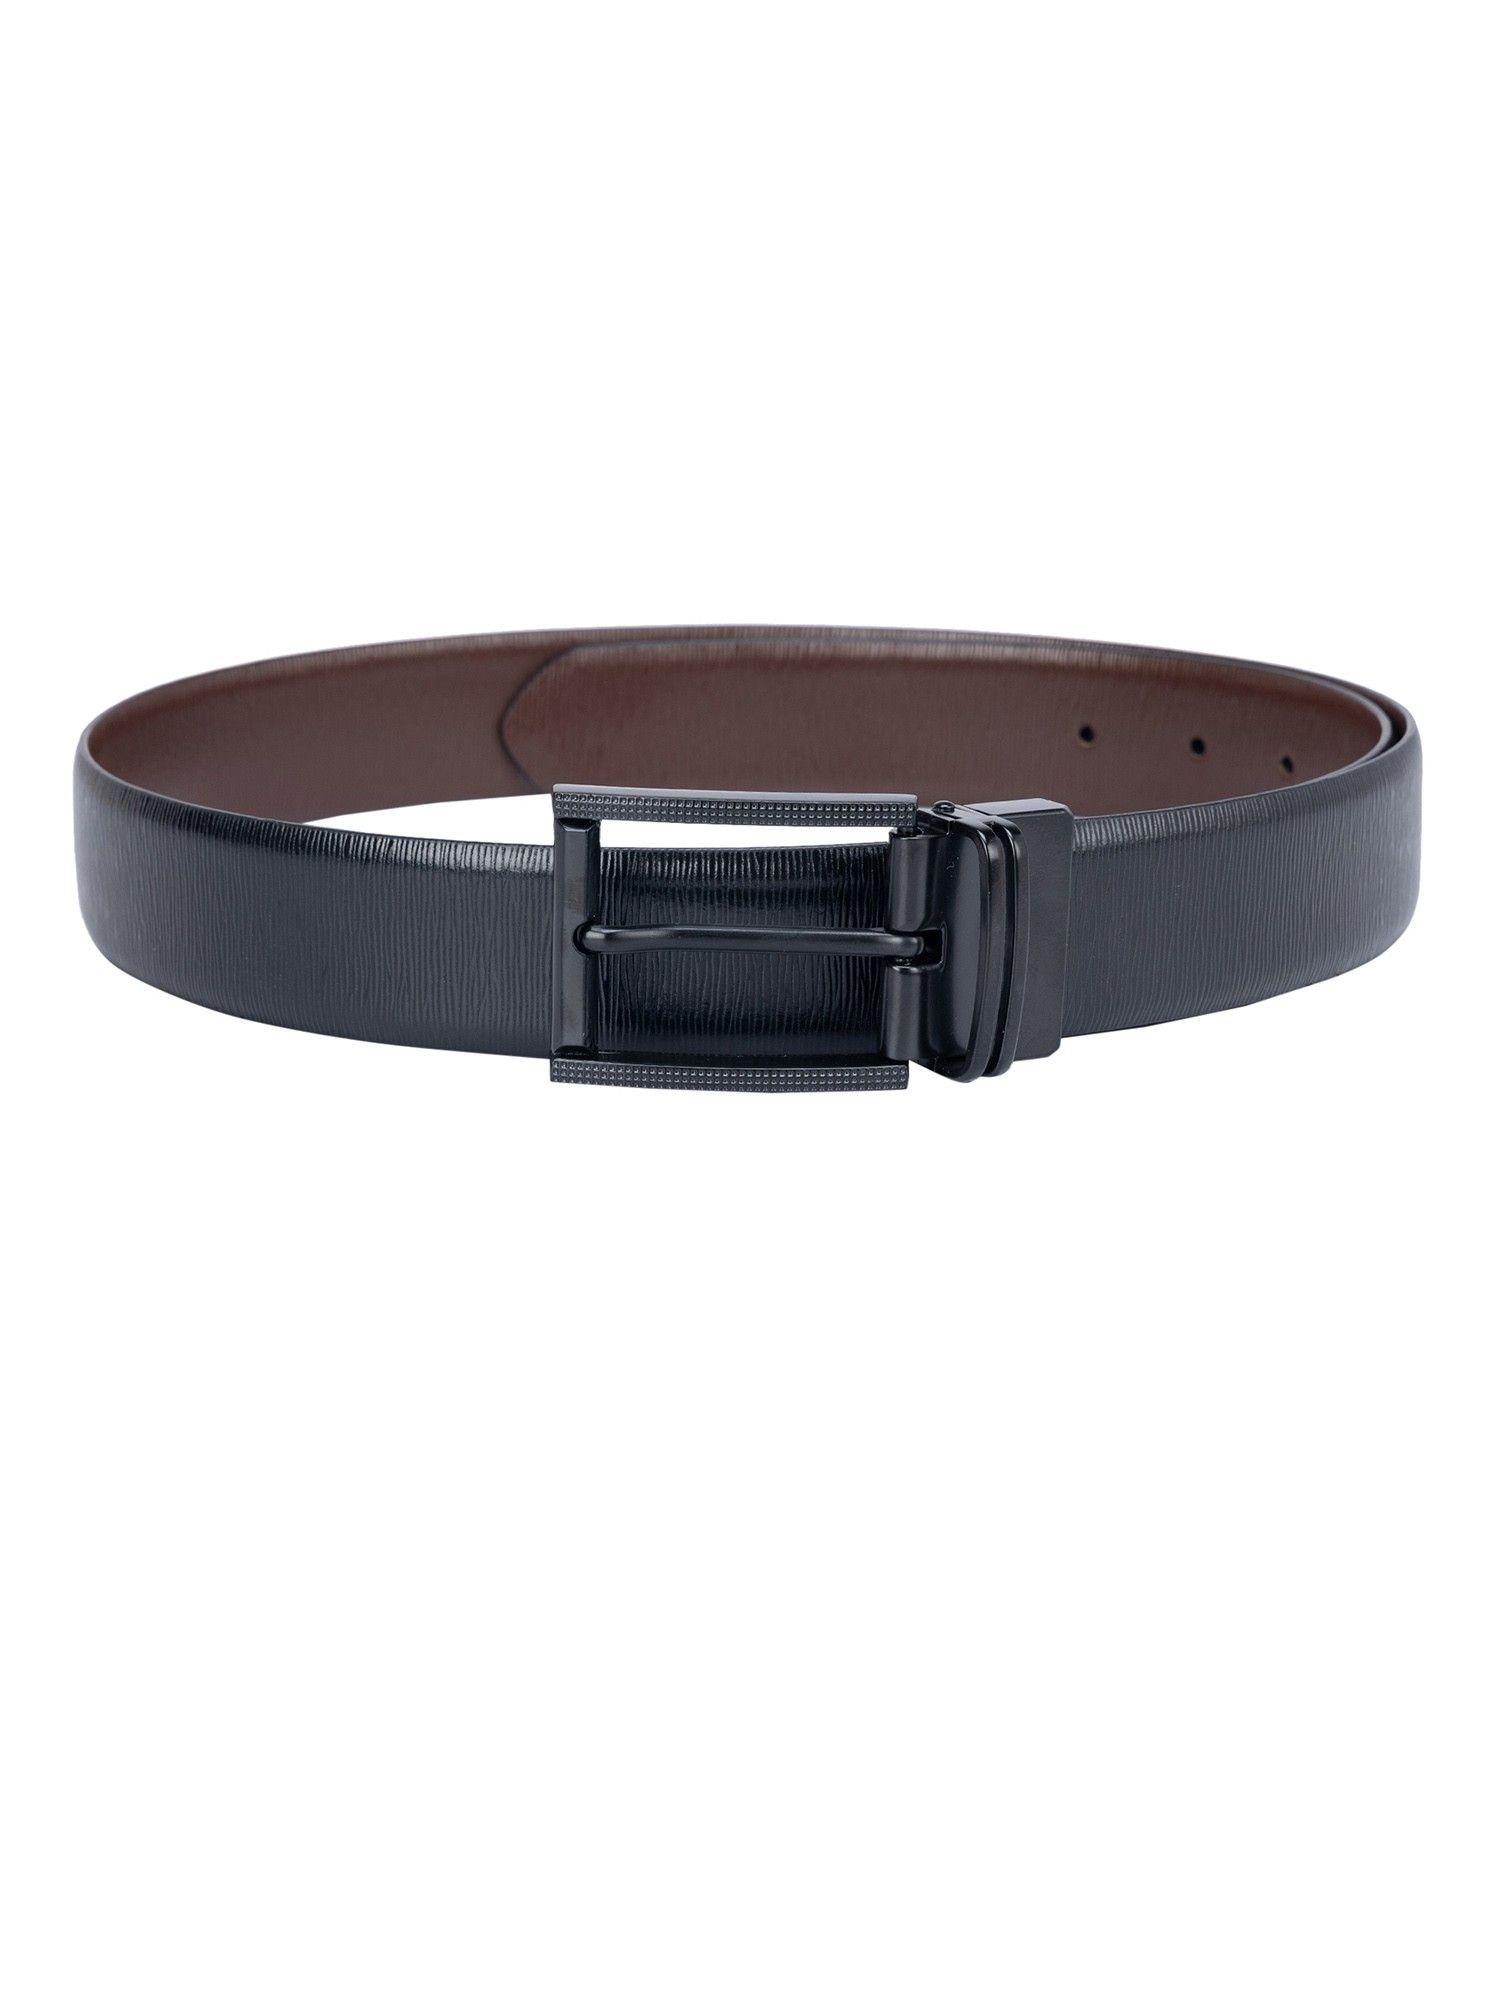 aztec leather black & brown reversible belt bm-3309-35r-olaztec